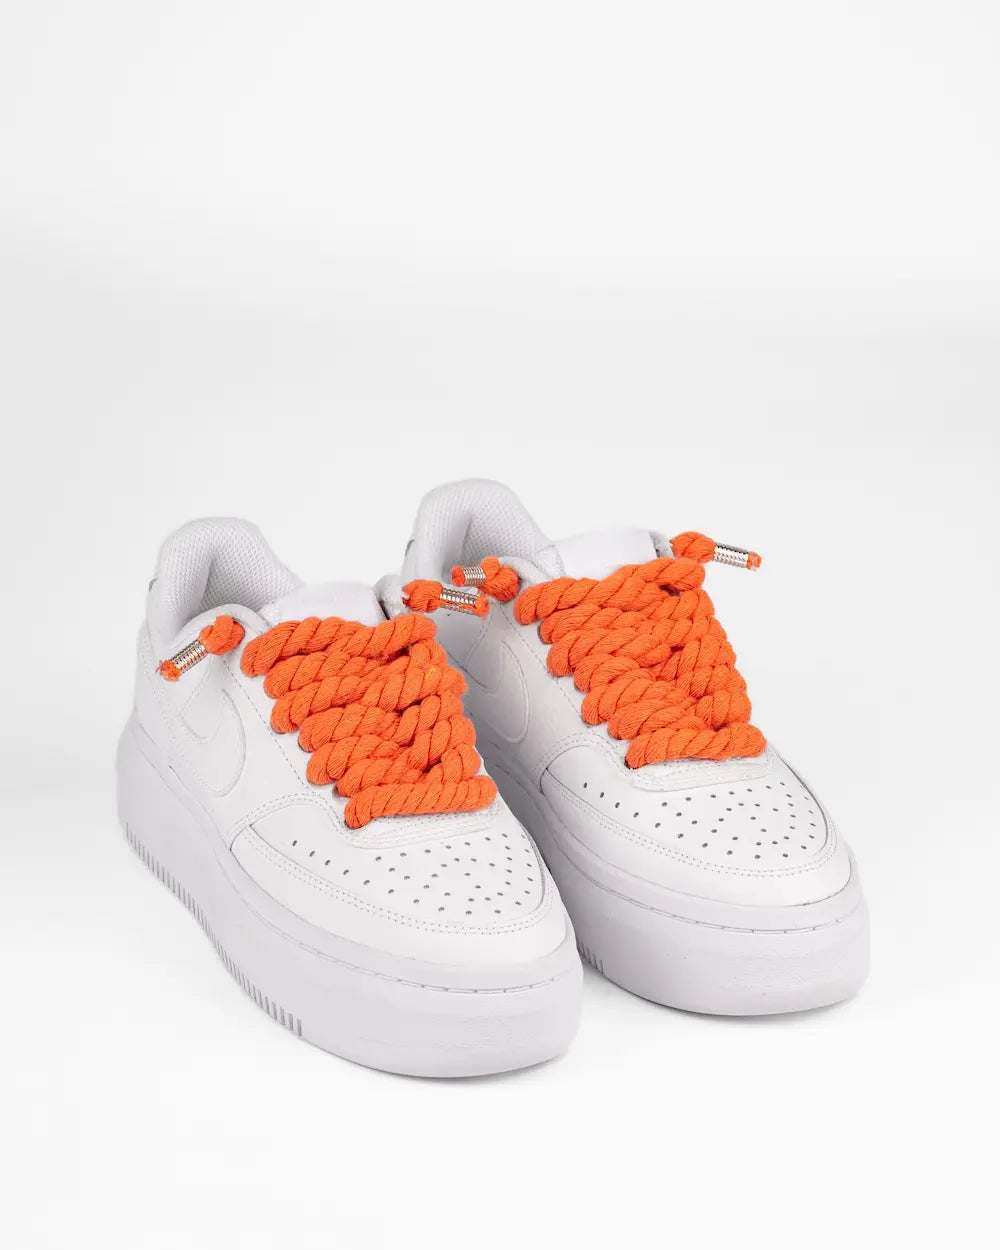 Nike Court Vision Platform personalizzata da SEDDYS con lacci in corda arancione